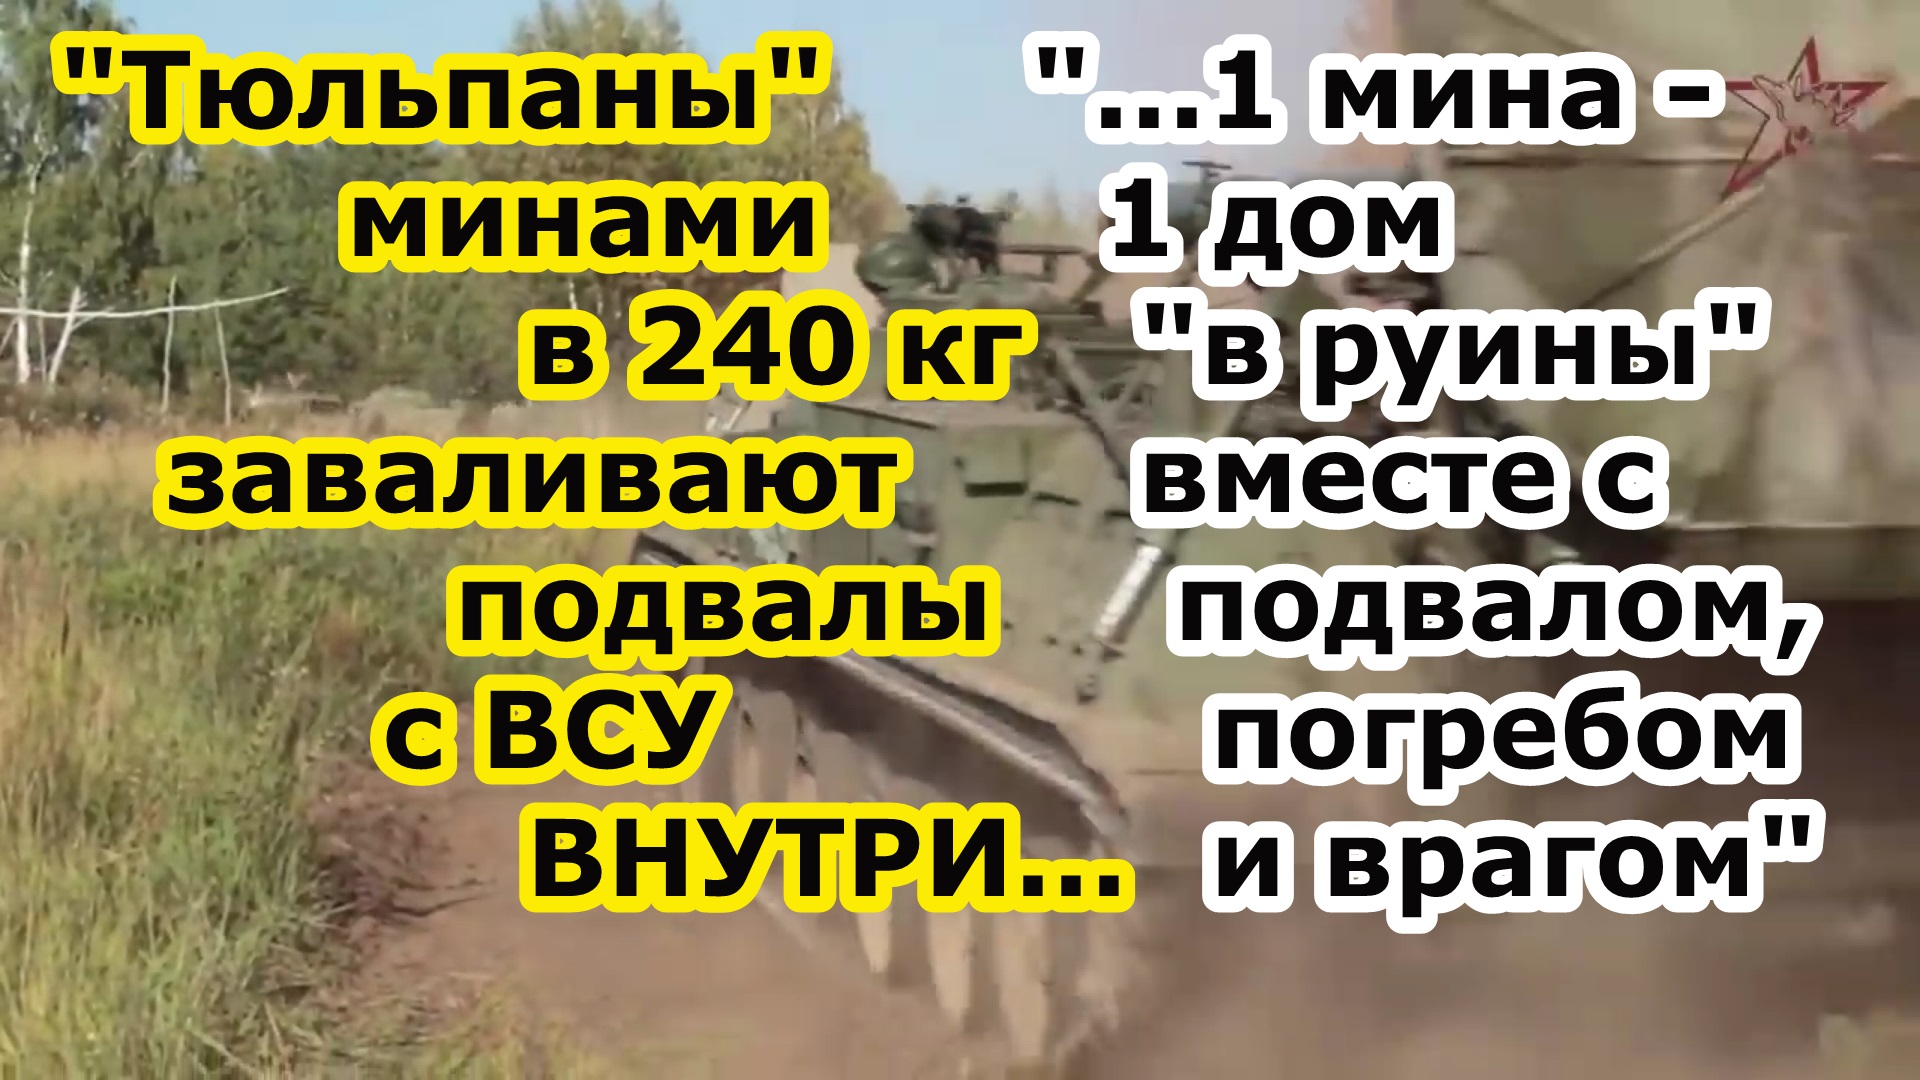 Тяжелые минометы 2с4 Тюльпан в Красногоровке разбирают части ВСУ на кирпичи минами в 130 и 240 кг